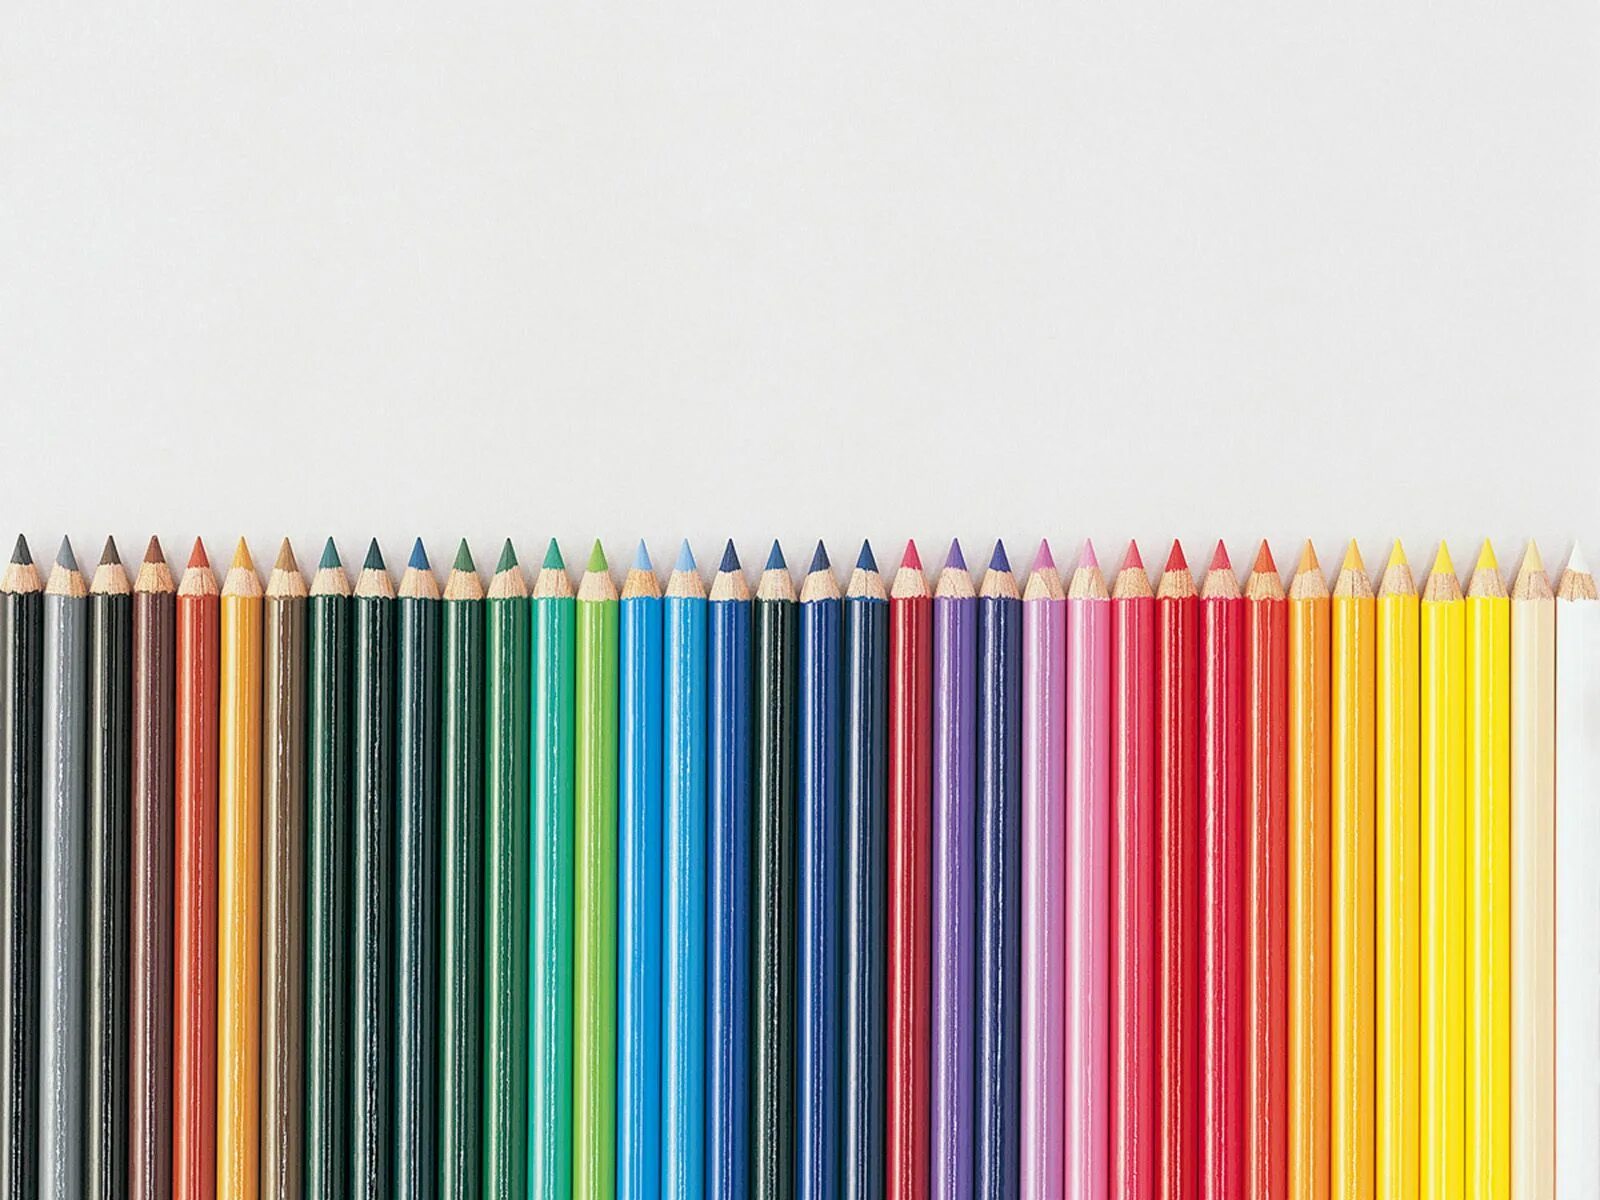 Покажи какие карандаши. Карандаши колор пенсил. Карандаши цветные. Цветные карандаши на белом фоне. Цветные карандаши в ряд.